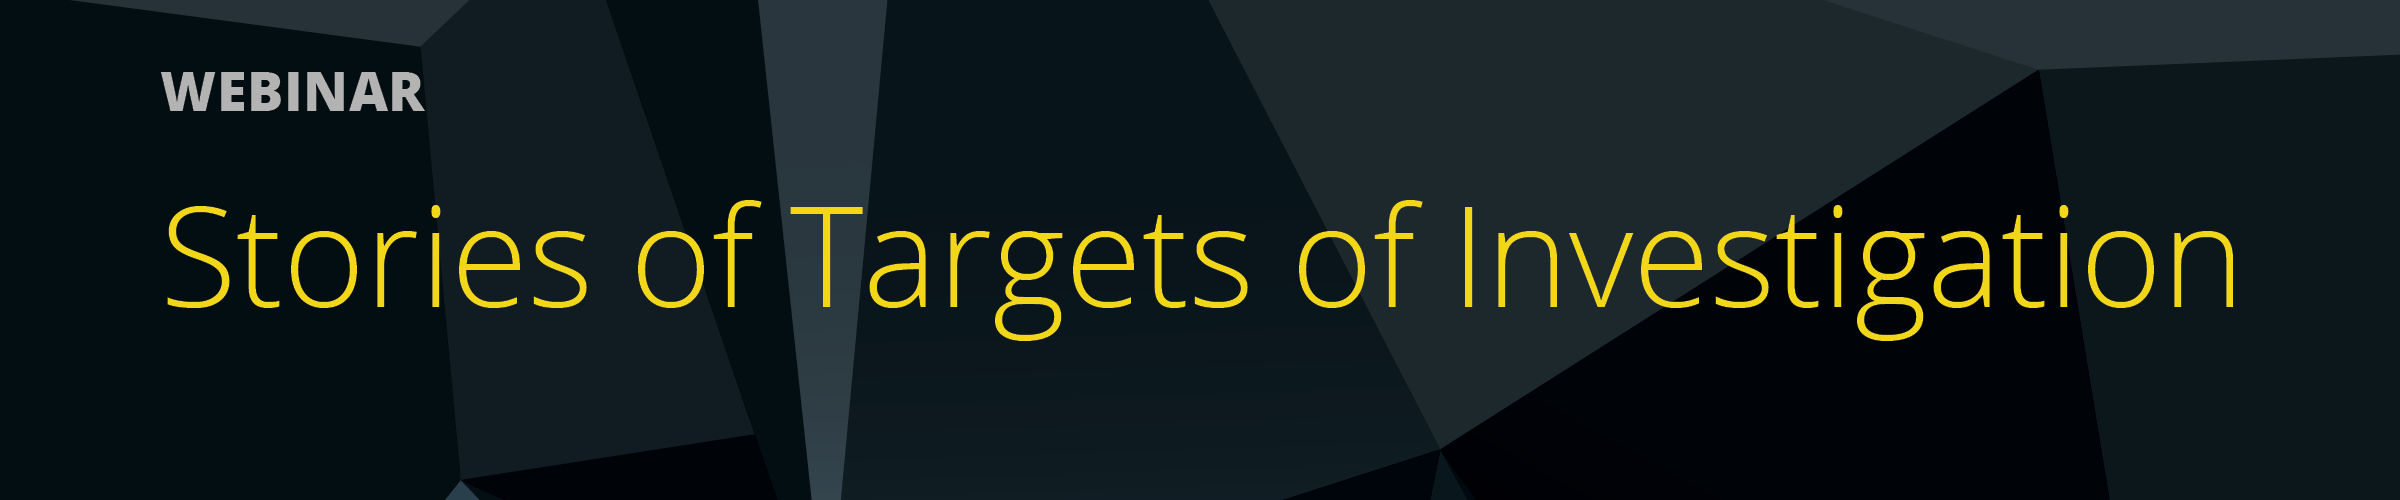 Stories of Targets of Investigation webinar banner